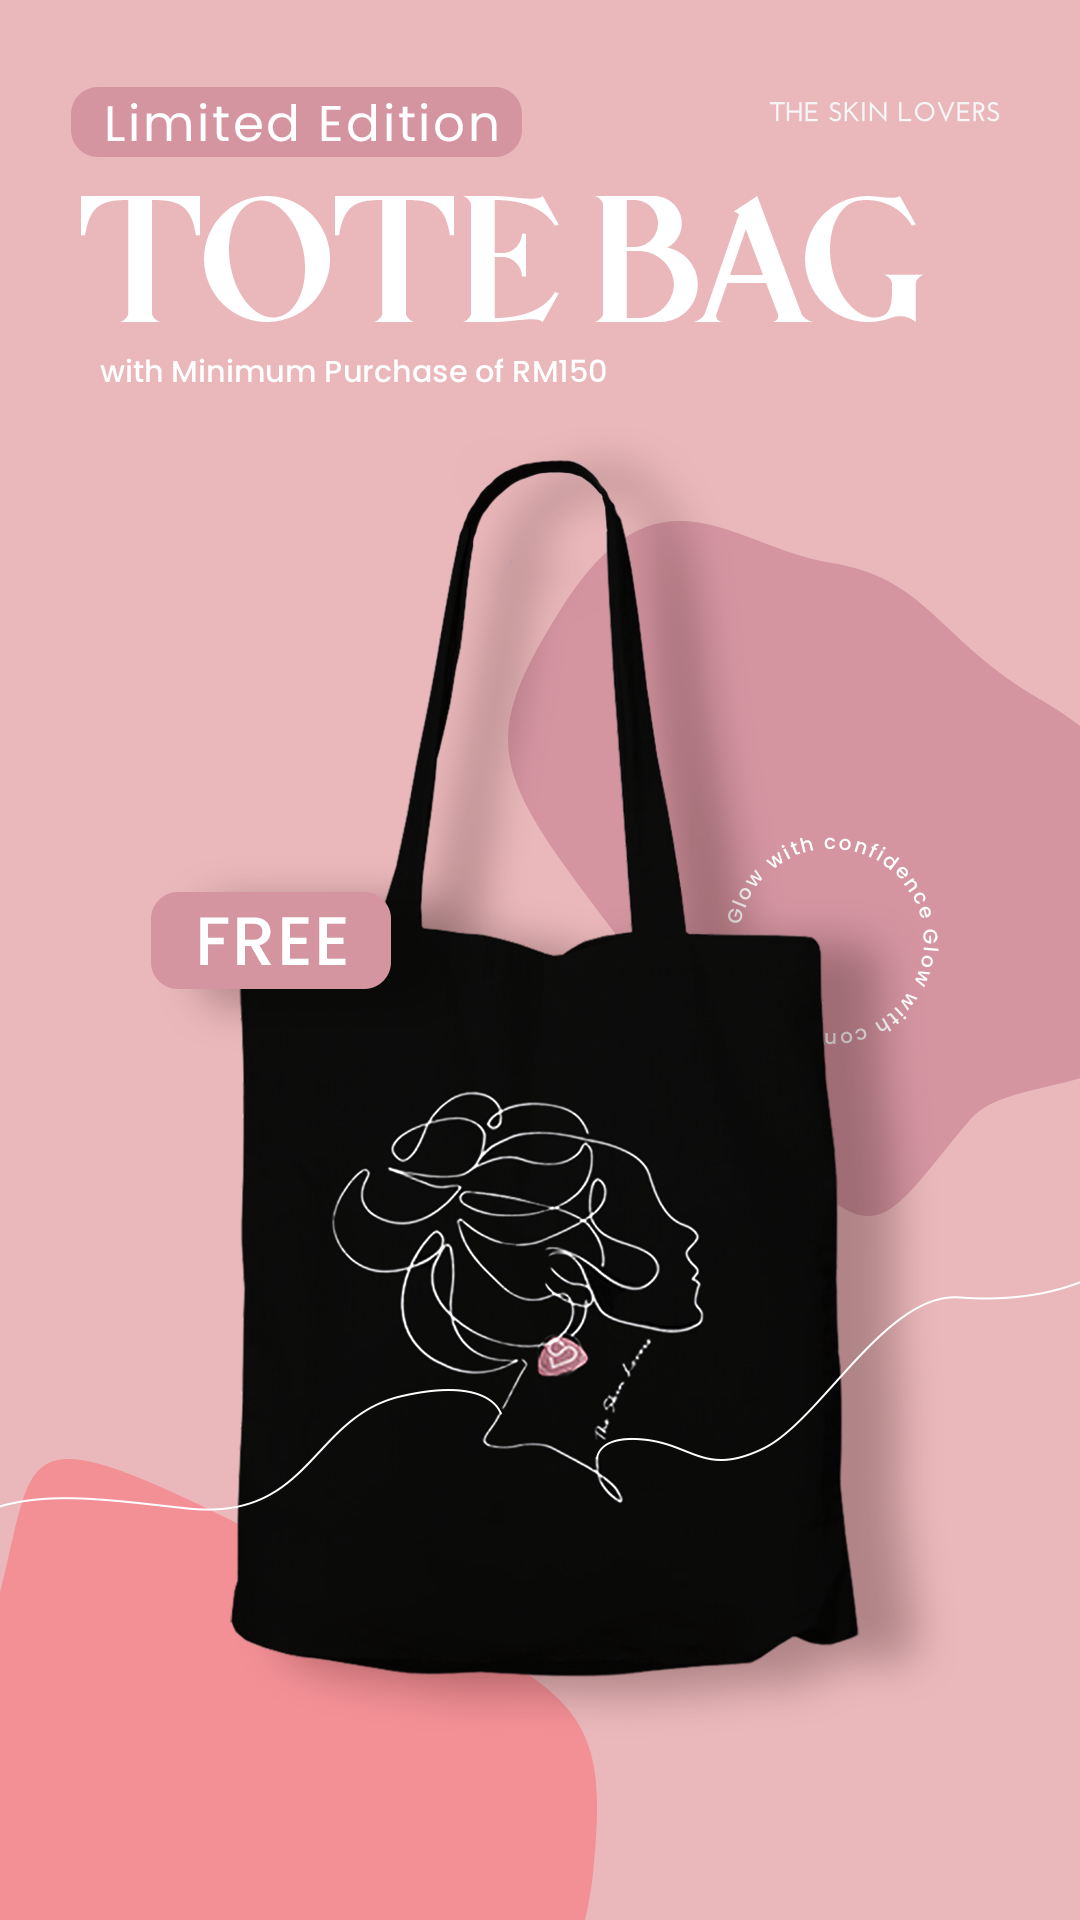 Free tote bag